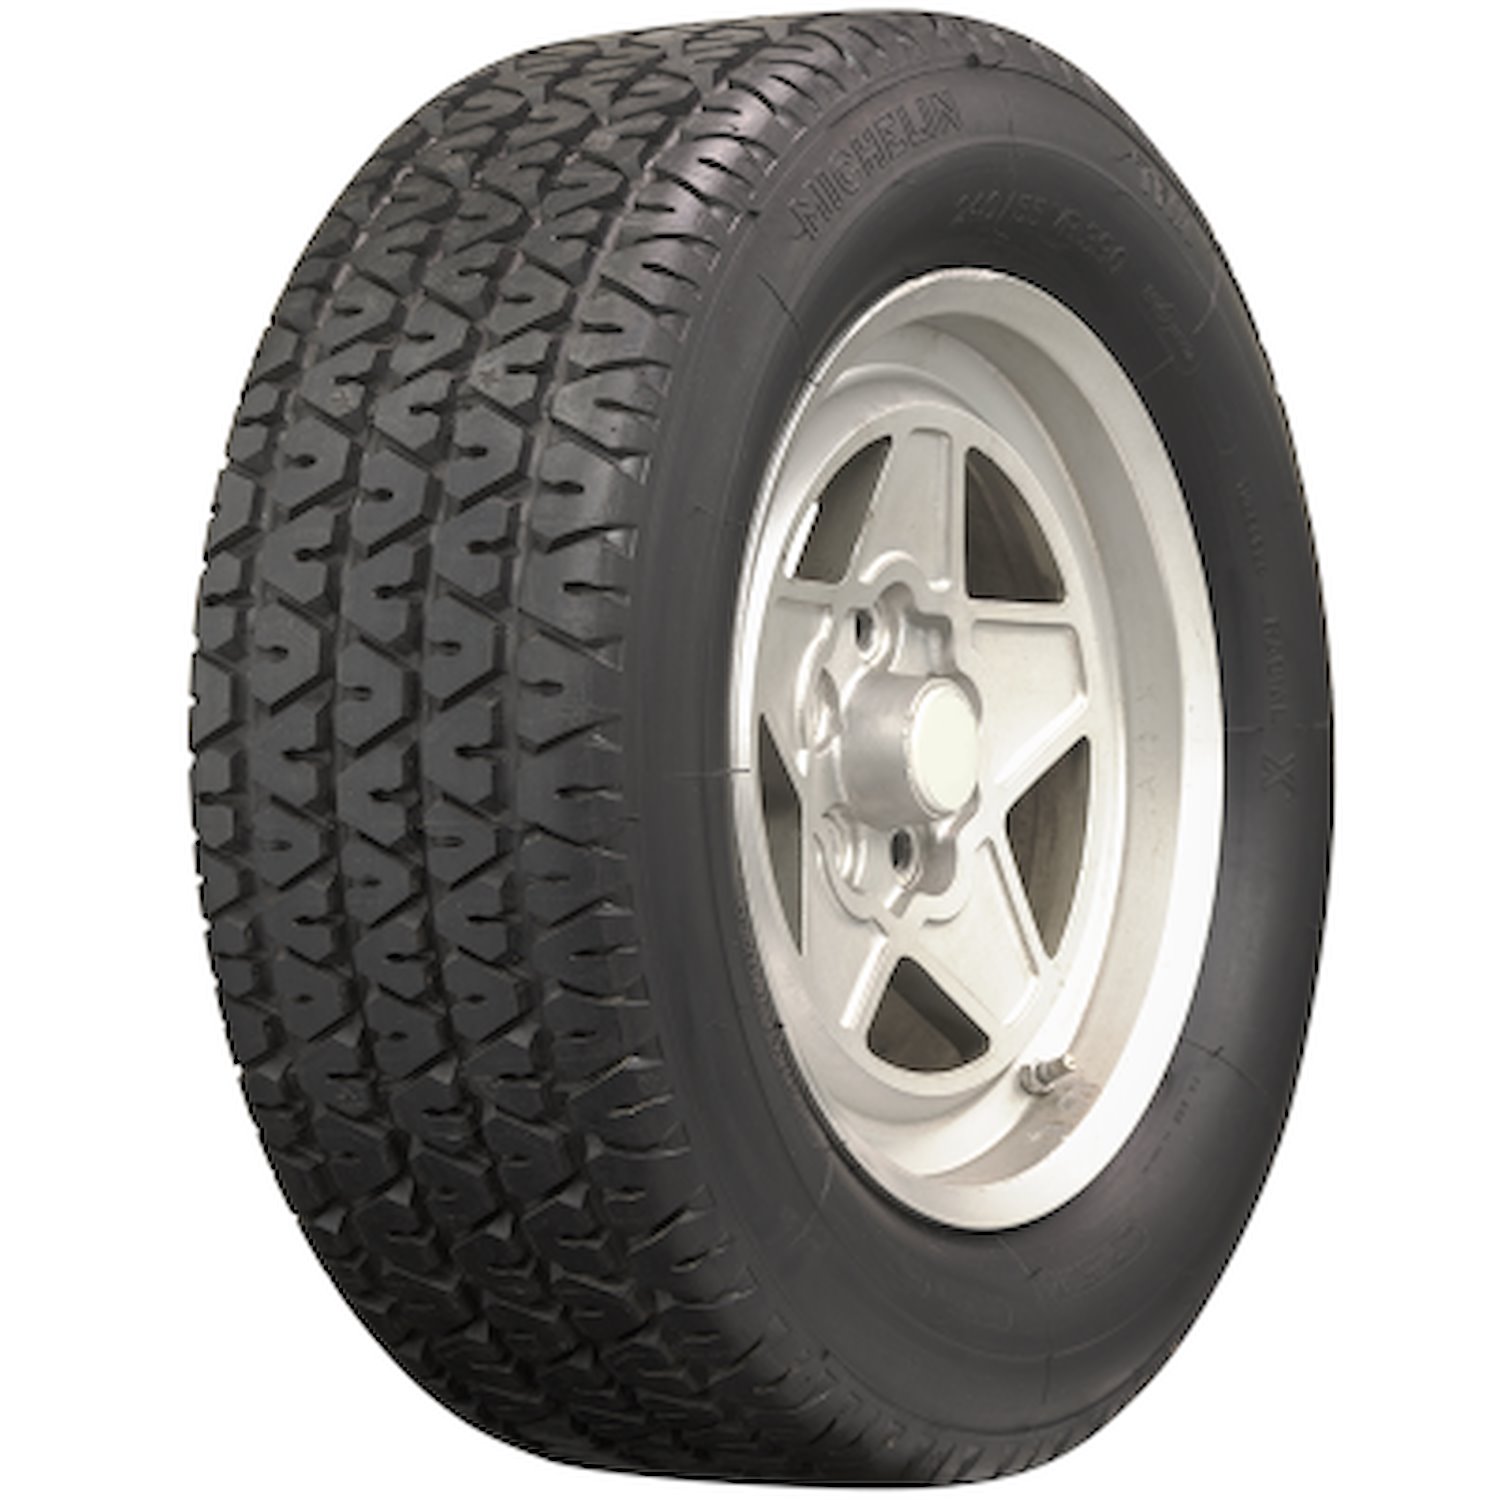 631954 Tire, Michelin TRX-B, 240/55VR390 89W